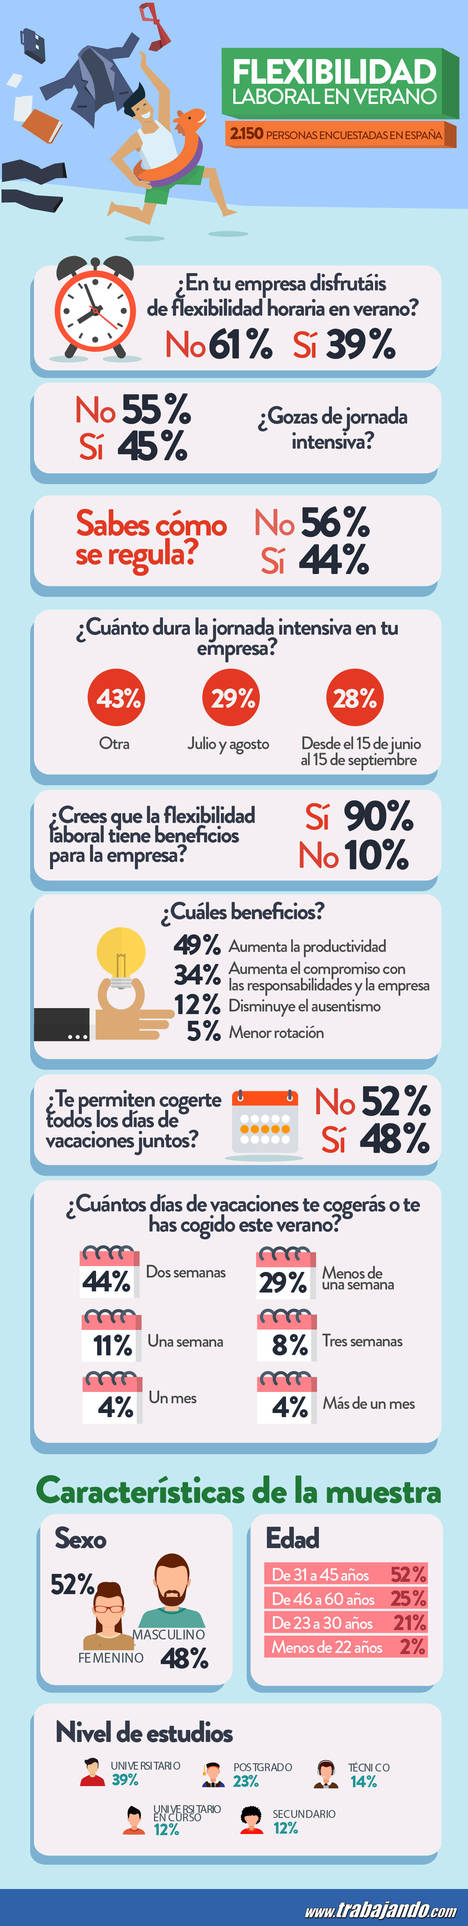 Los españoles creen que la flexibilidad horaria aumenta la productividad, pero solo la disfruta un 39% de los encuestados